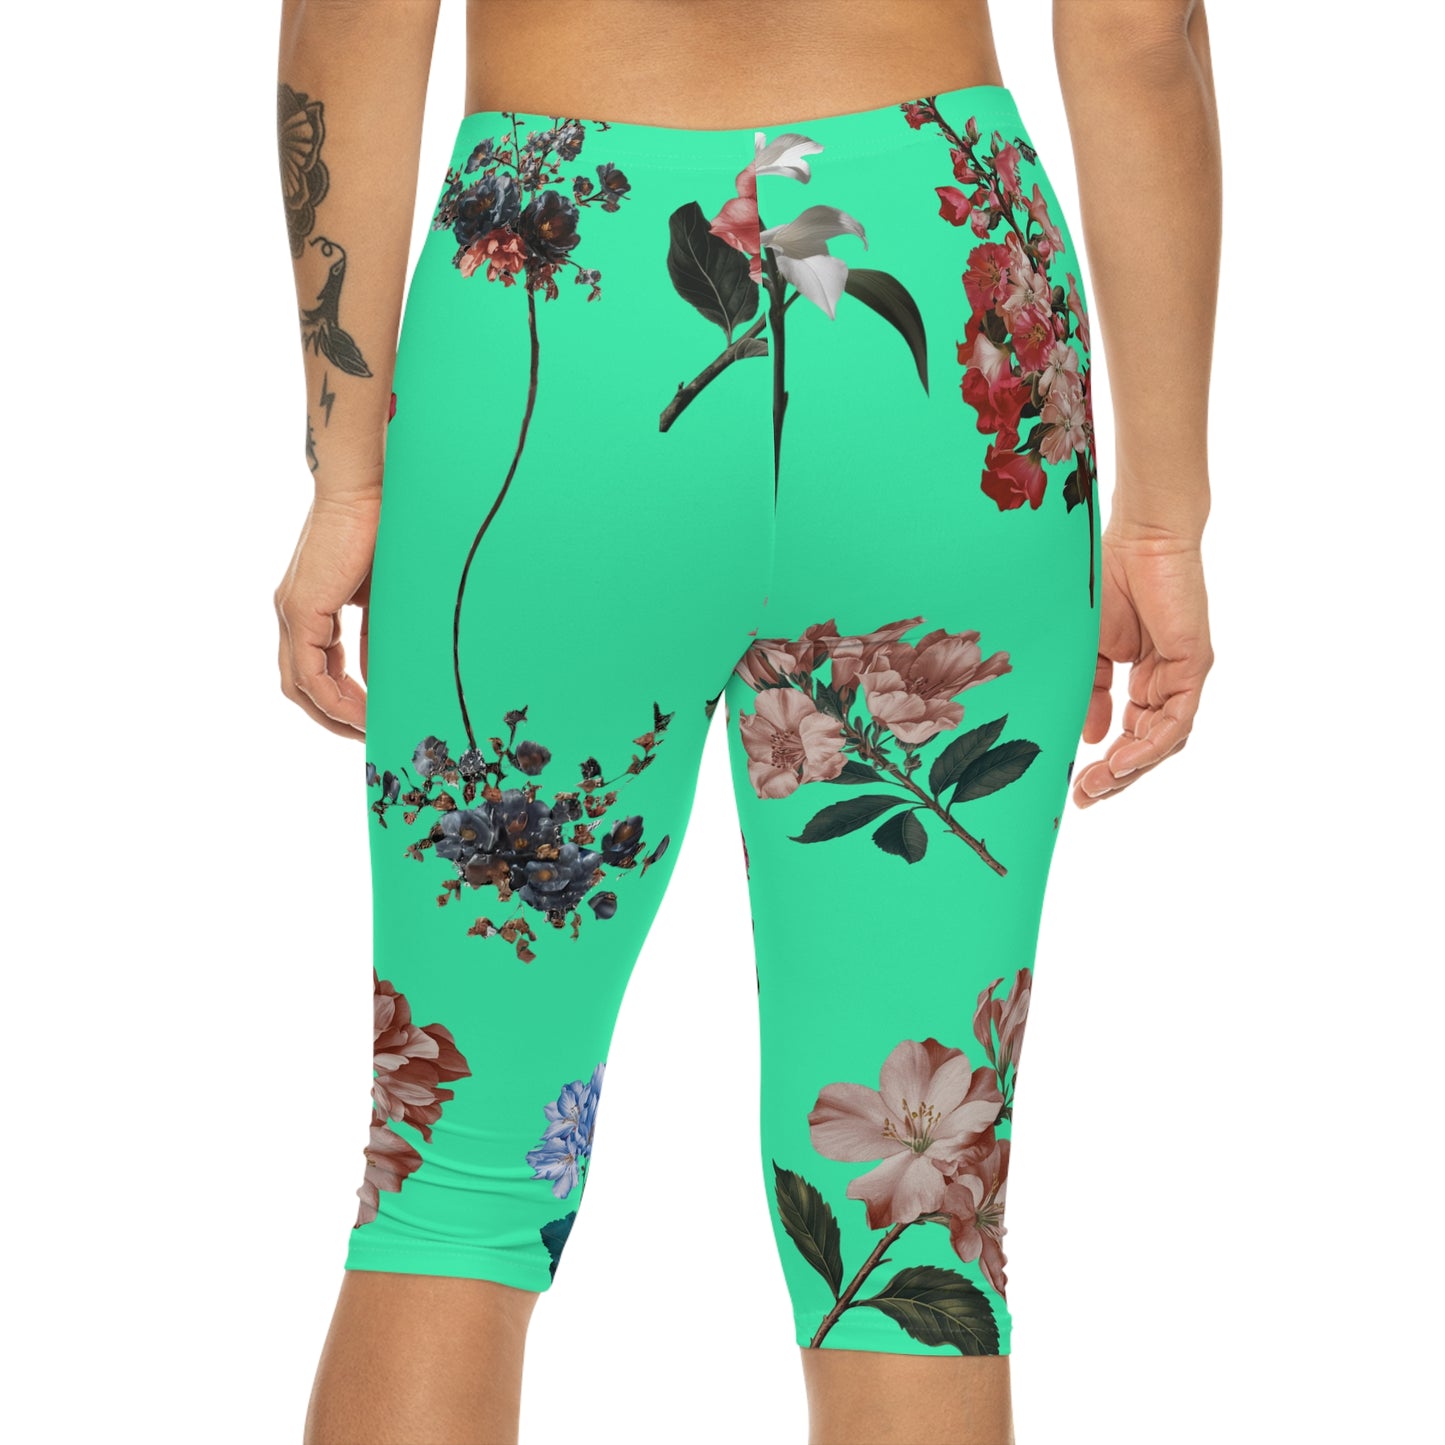 Botanicals on Turquoise - Capri Shorts